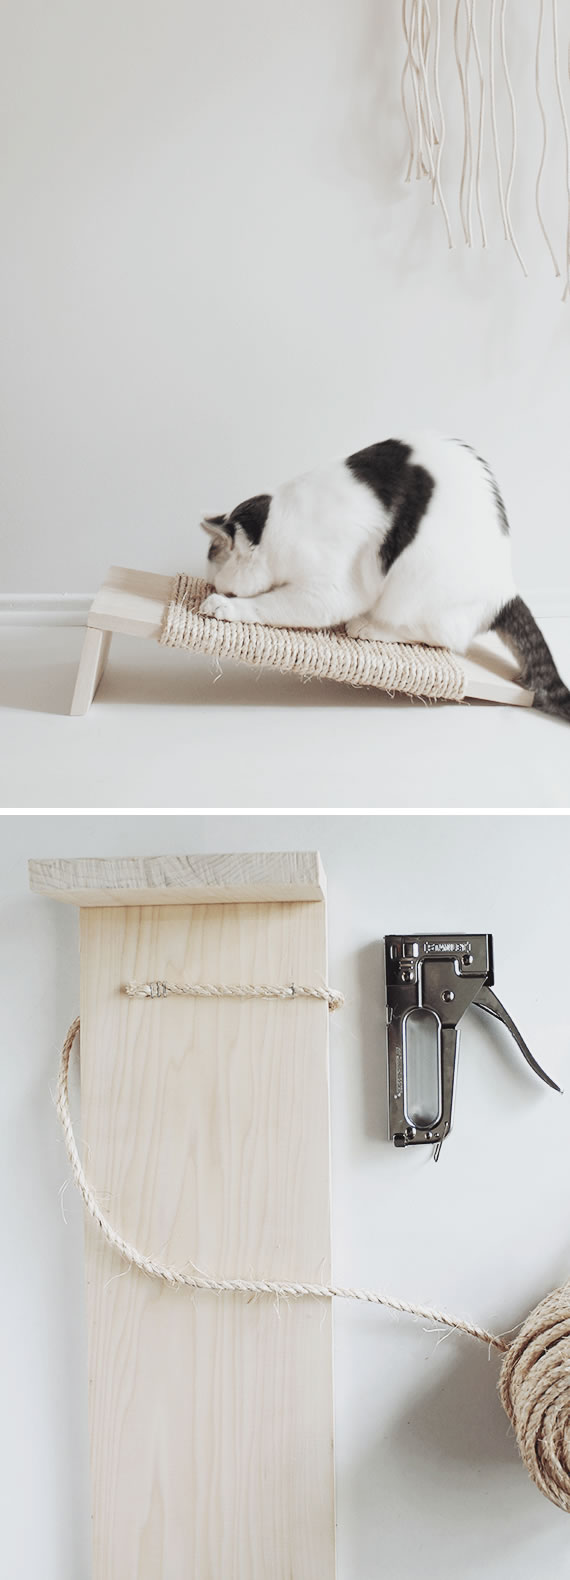 Faça Você Mesmo 10 Arranhadores Caseiros para Gatos